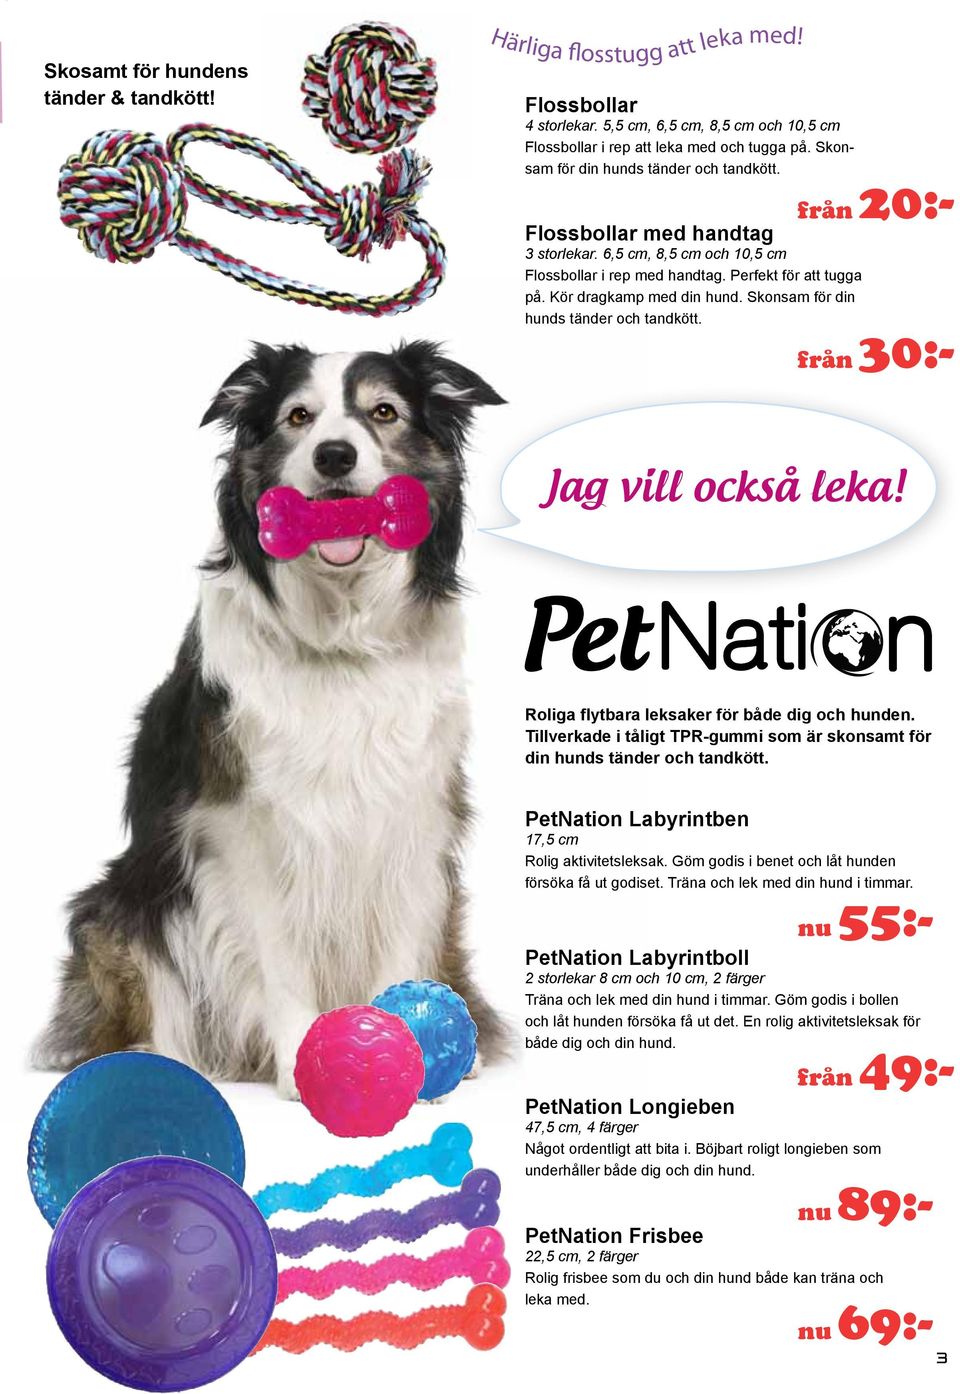 Skonsam för din hunds tänder och tkött. från 30:- Jag vill också leka! Roliga flytbara leksaker för både dig och hunden. Tillverkade i tåligt TPR-gummi som är skonsamt för din hunds tänder och tkött.